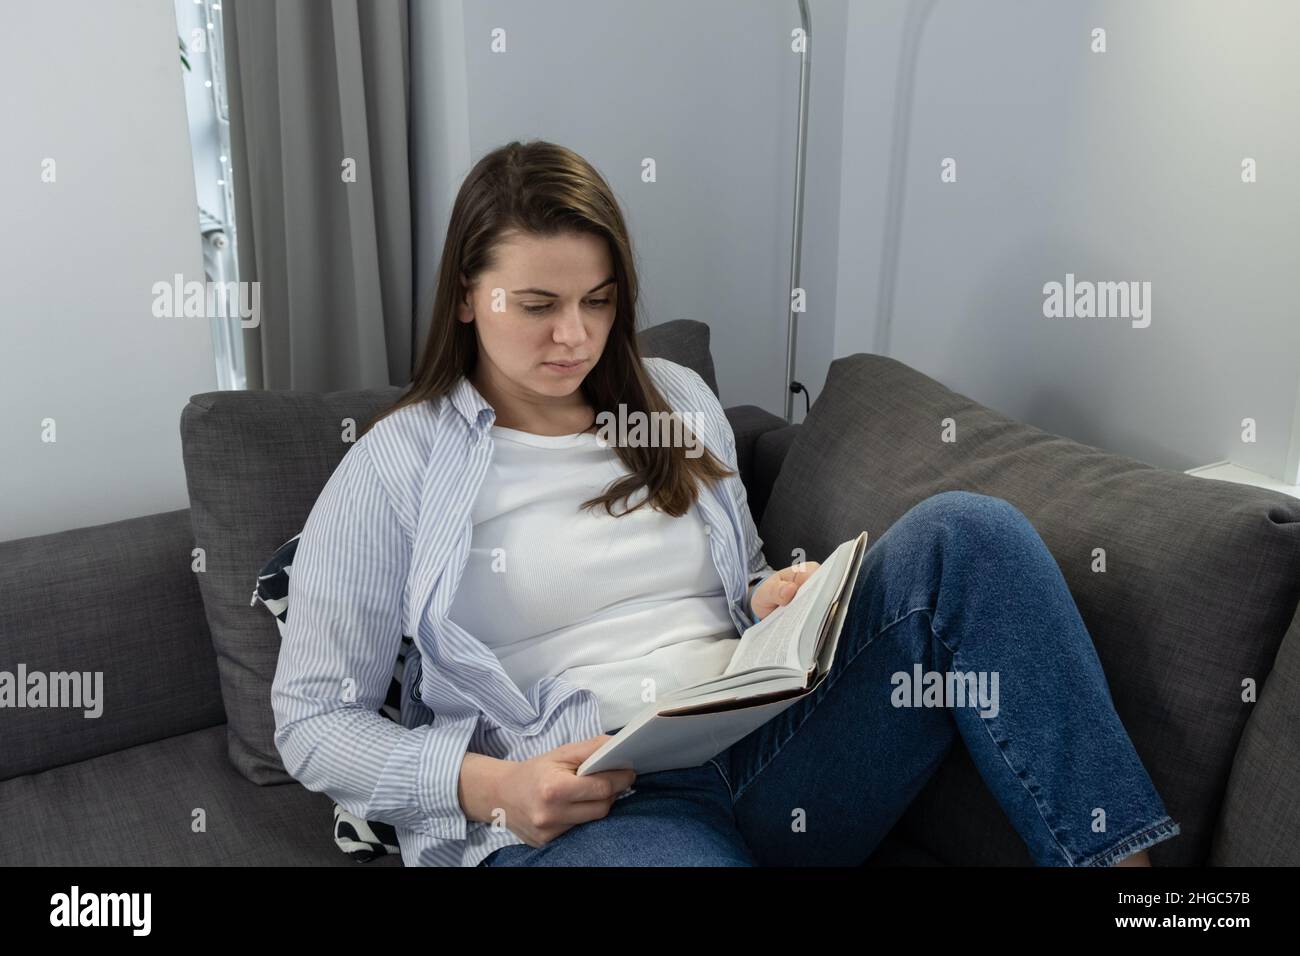 Femme sur un canapé à la maison avec un livre sur sa poitrine, prenant une pause, regardant sa montre intelligente.Concept de fatigue et de troubles du sommeil Banque D'Images